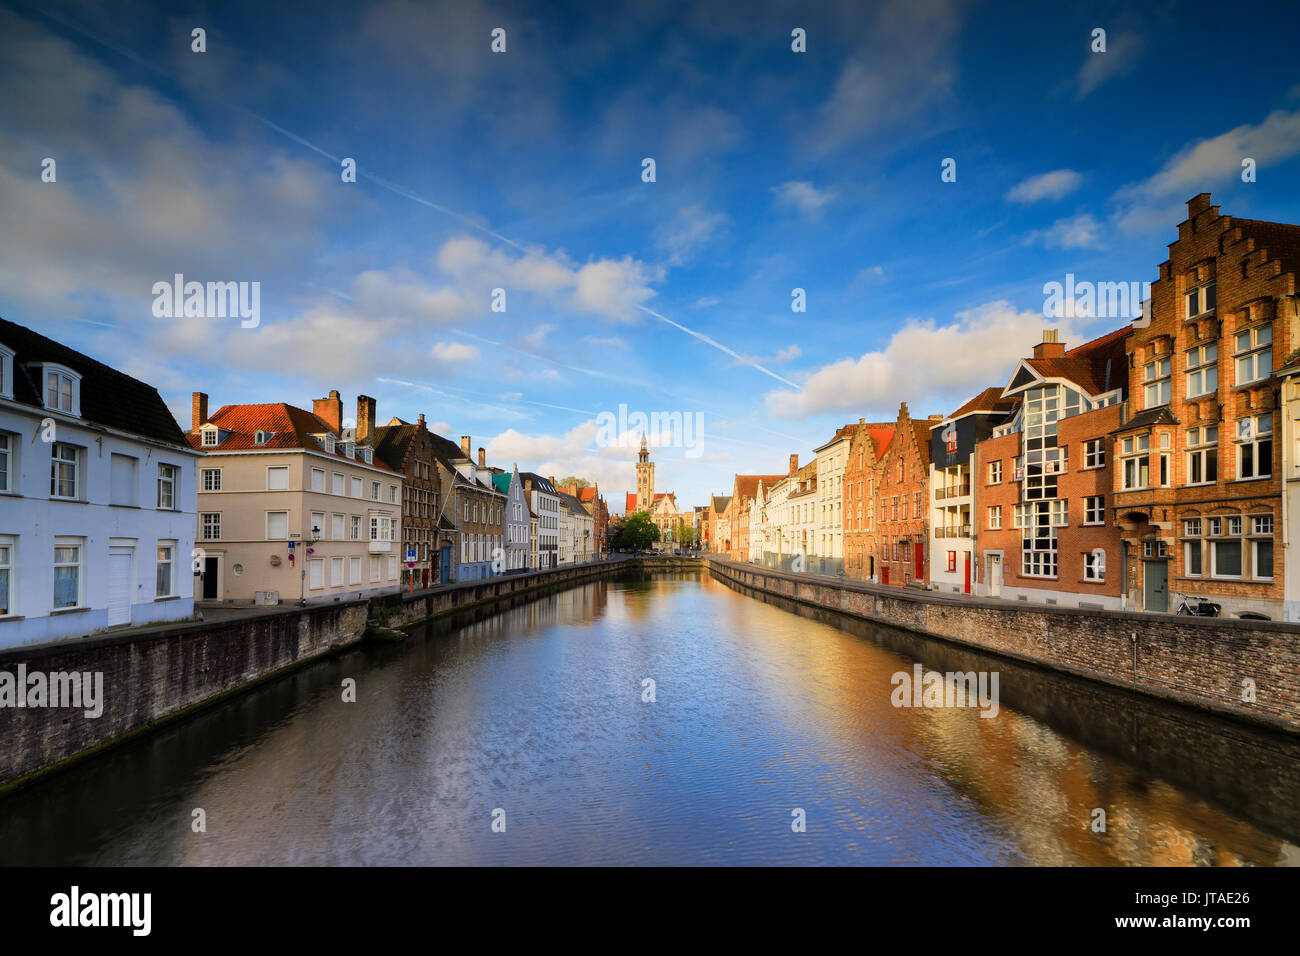 Ciel clair à l'aube sur les bâtiments historiques et maisons de centre-ville compte dans le canal, Bruges, Flandre occidentale, Belgique, Europe Banque D'Images